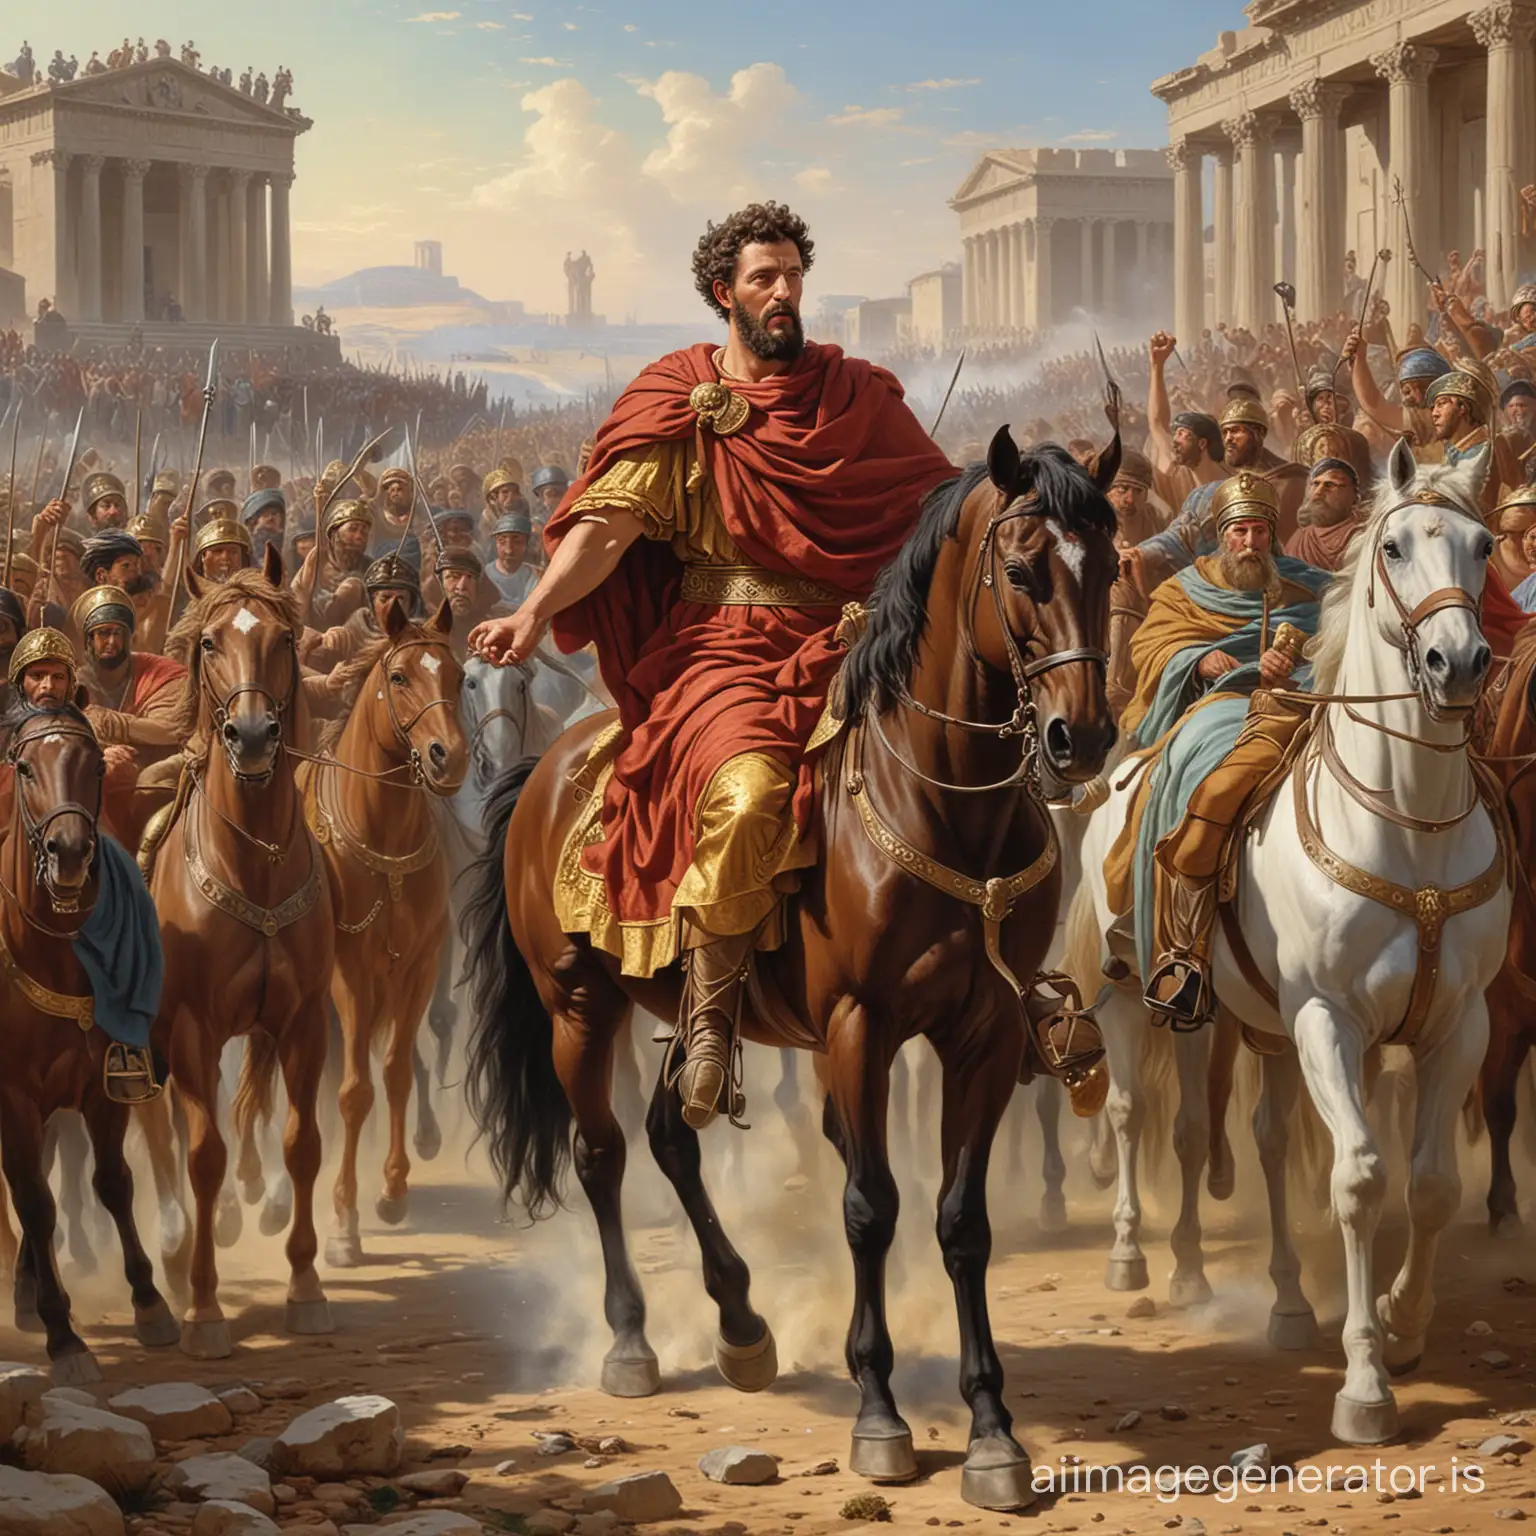 Marcus Aurelius leading the empire